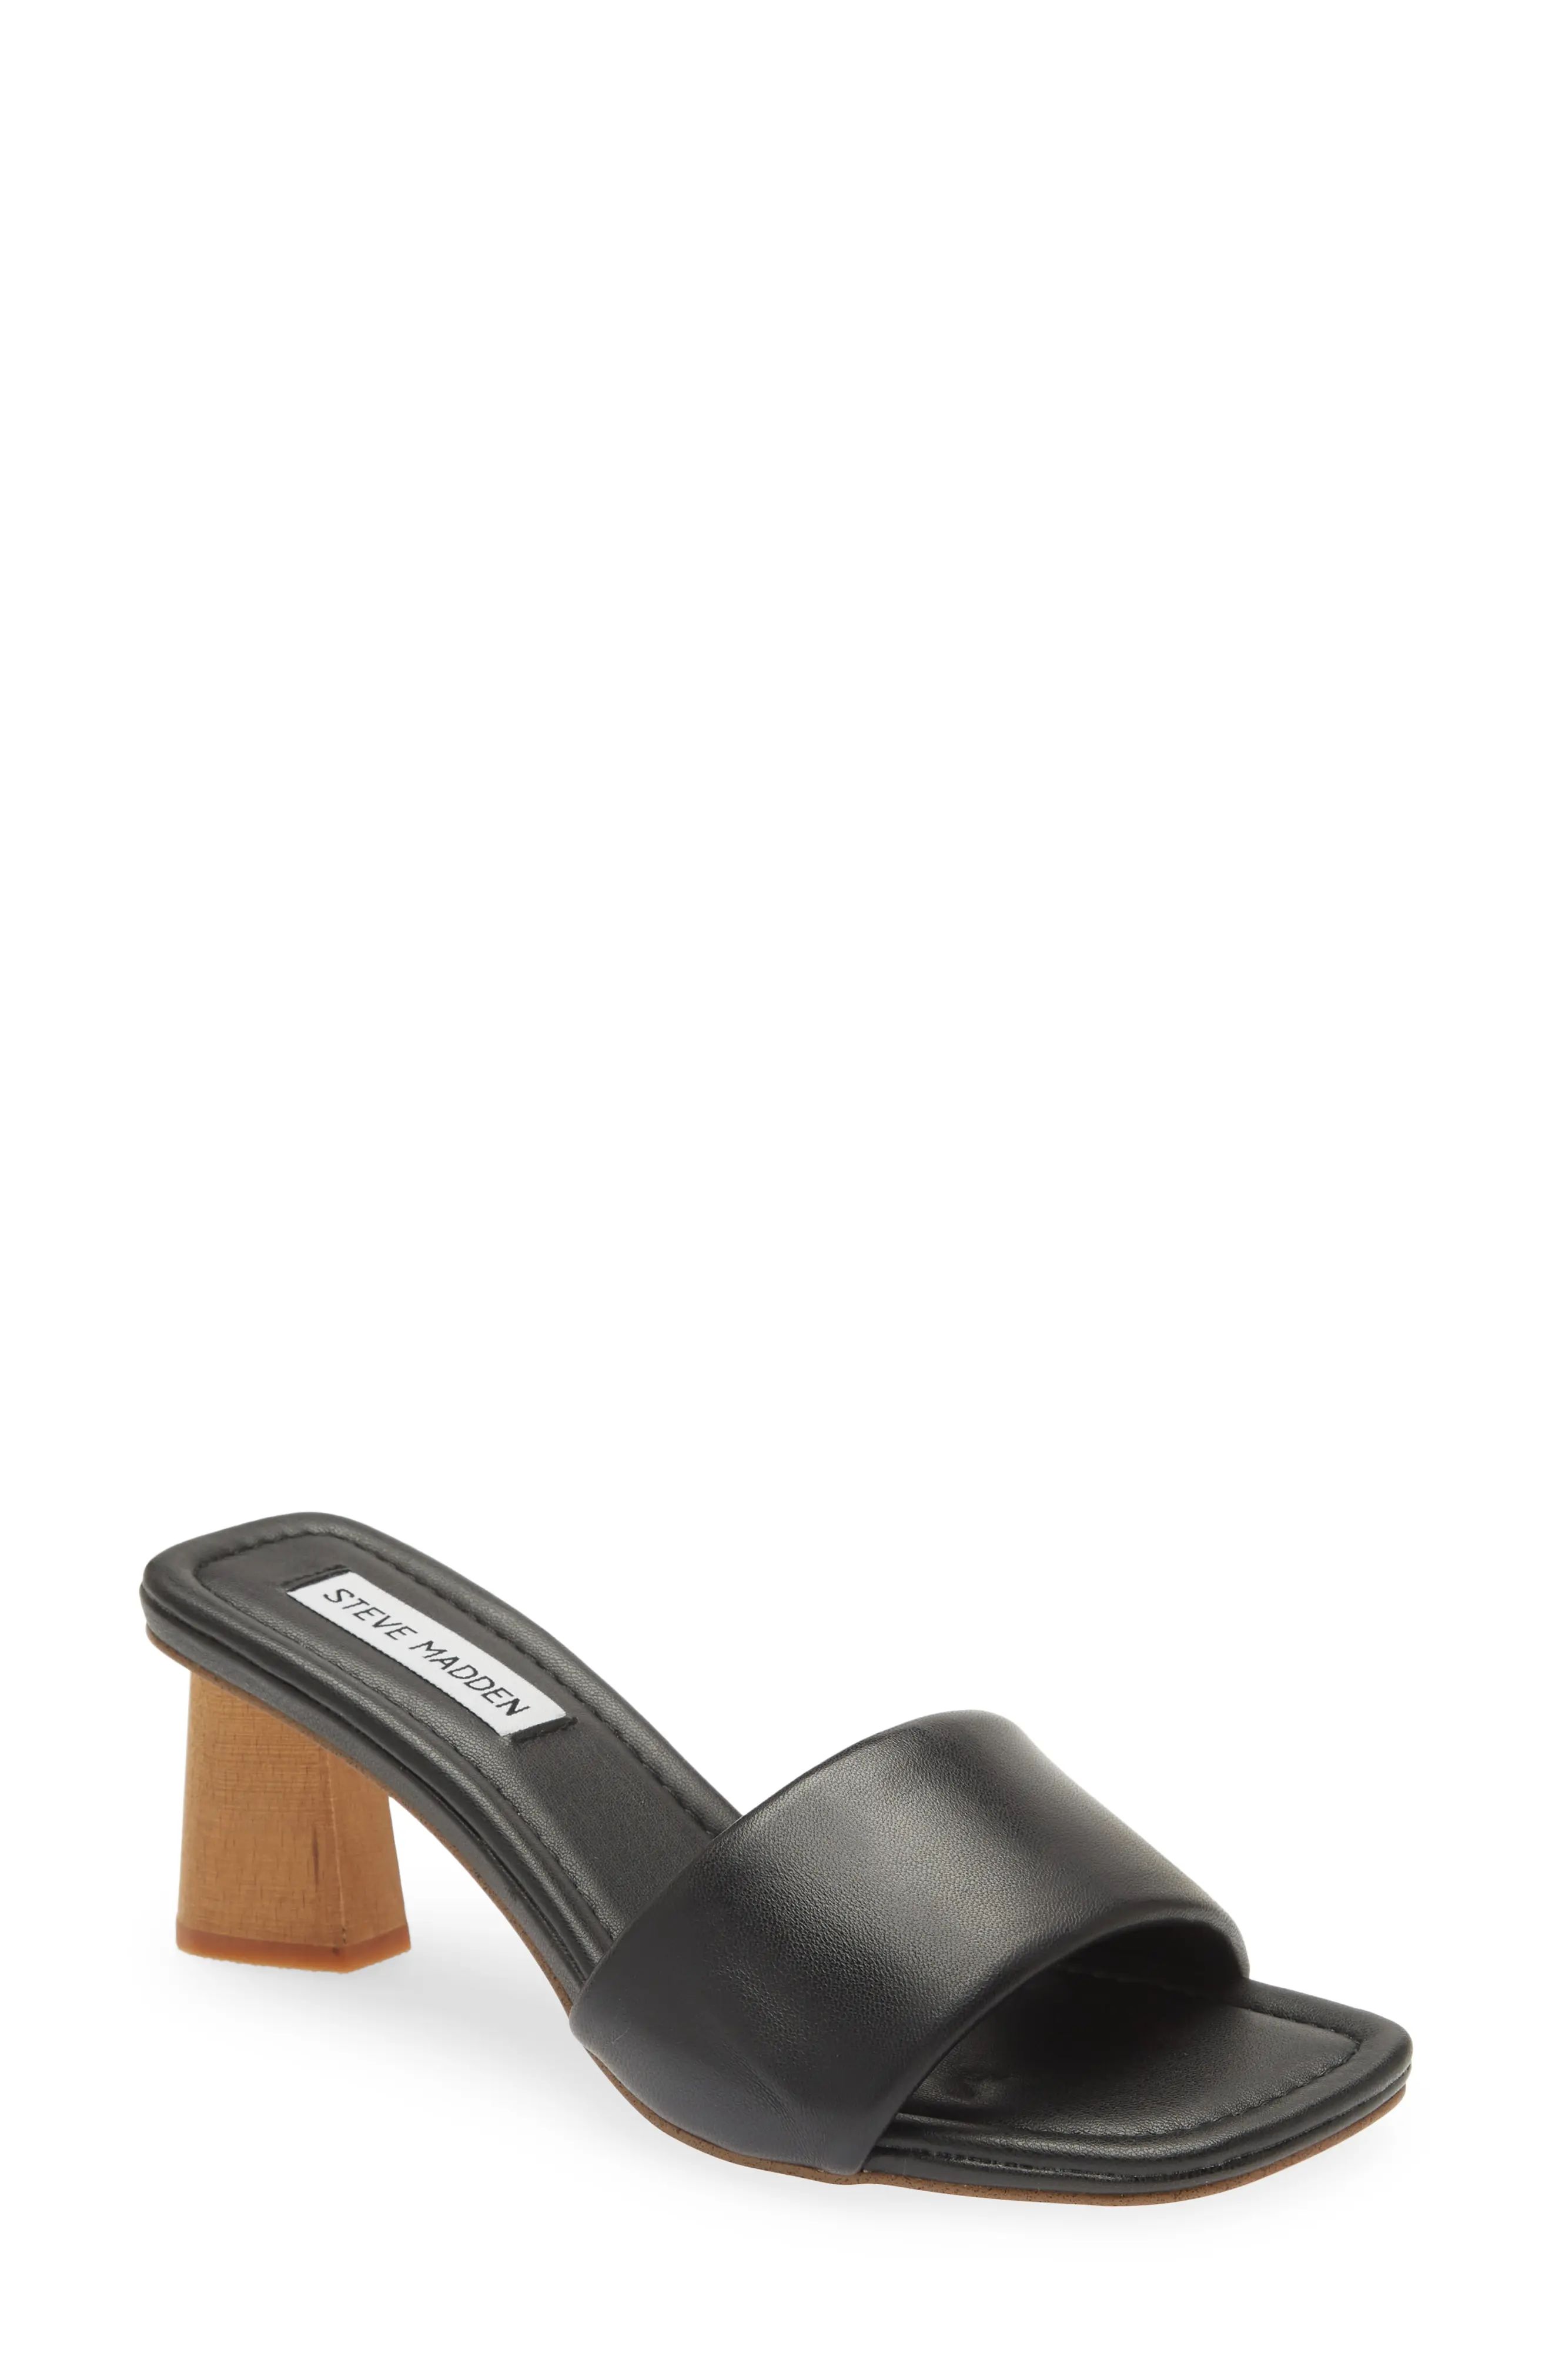 Steve Madden Saged Slide Sandal in Black Leather at Nordstrom, Size 9.5 | Nordstrom